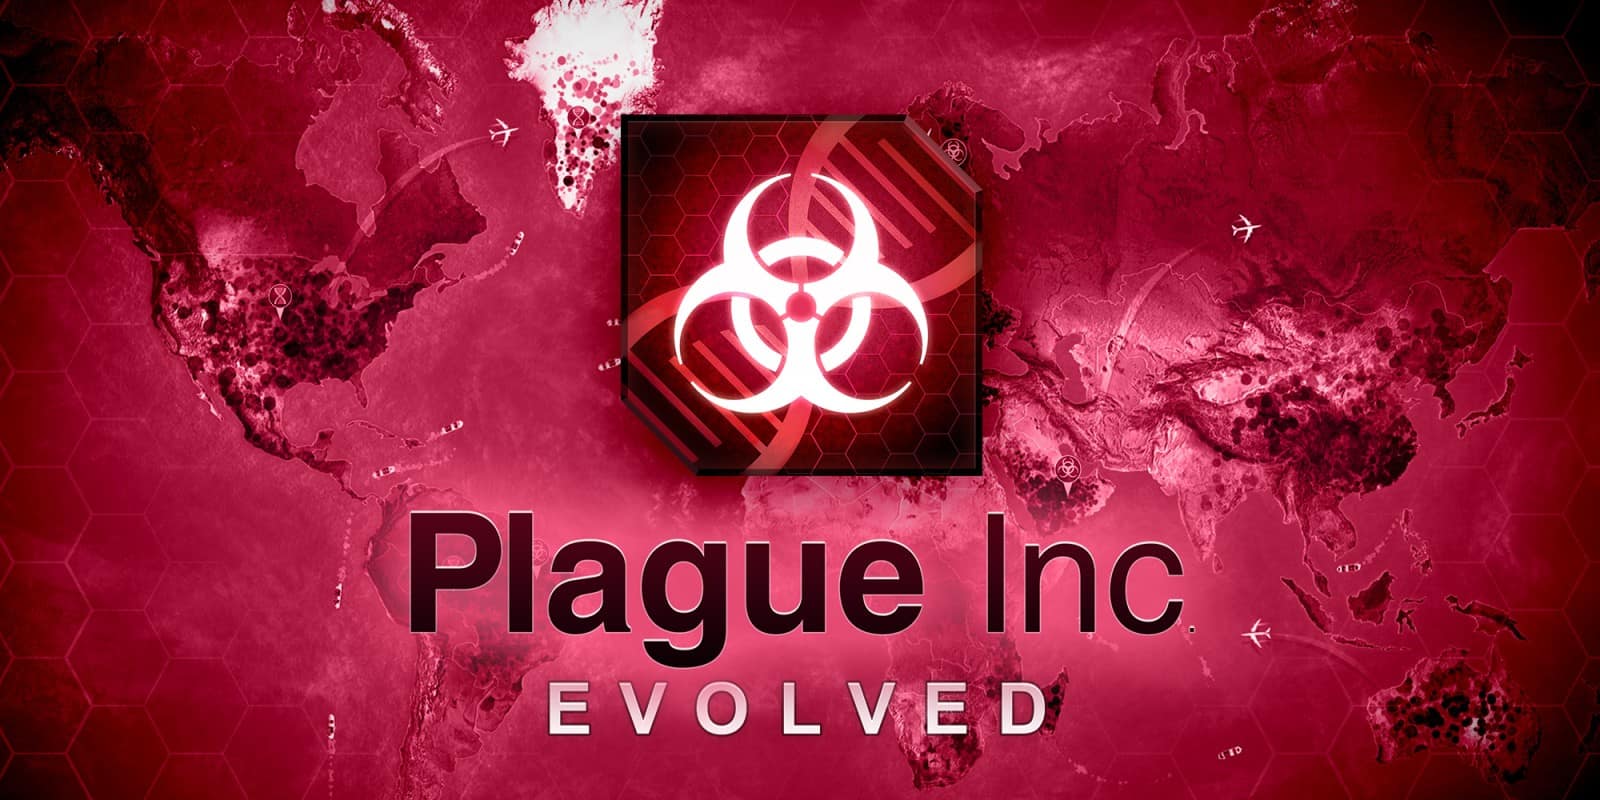 PC Plague Inc Evolved SaveGame 100